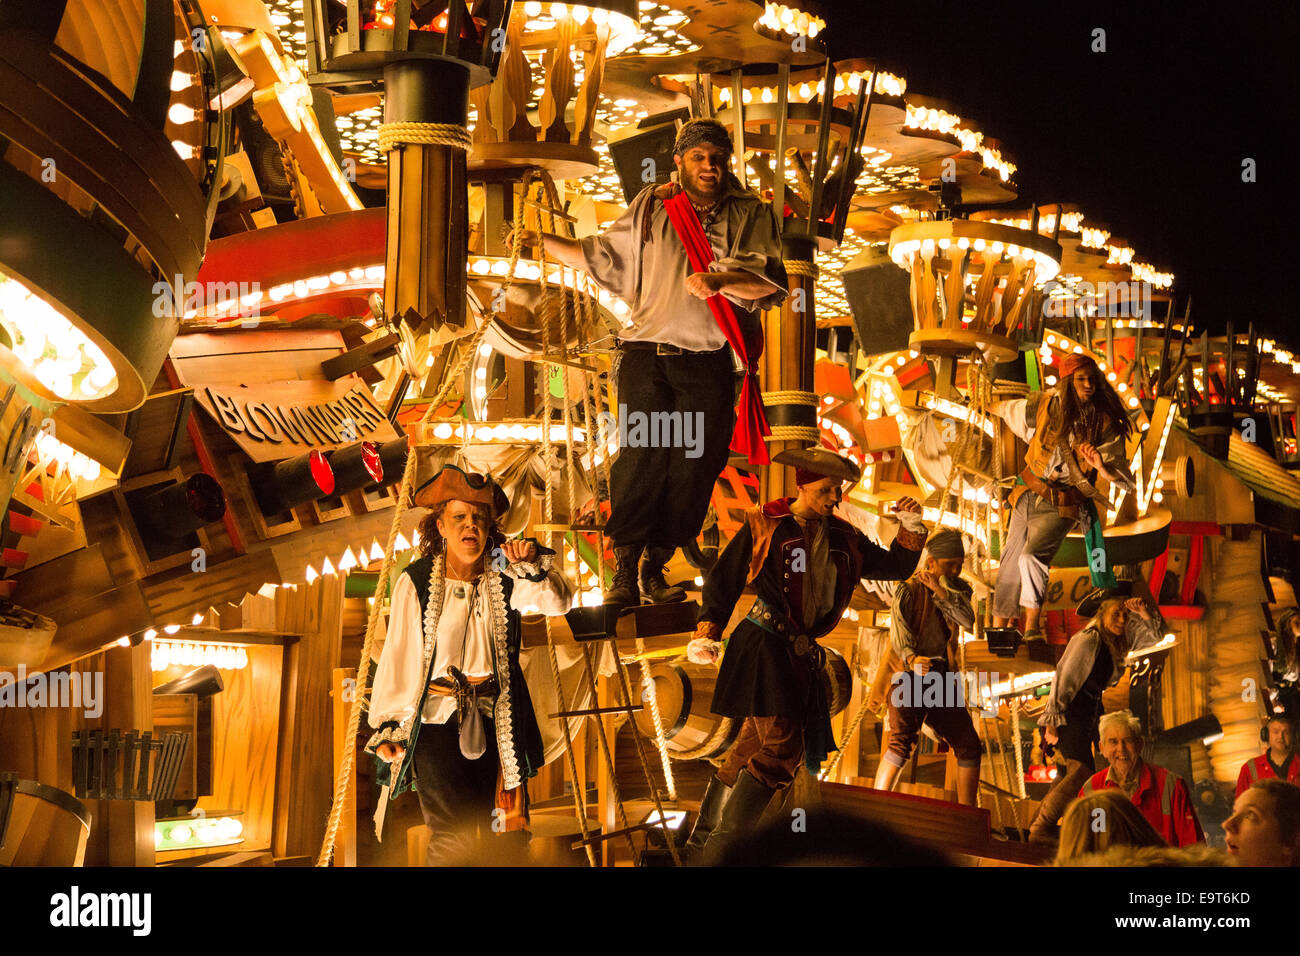 Bridgwater Karneval ist Europas größte beleuchteten Karneval. Dieses Jahr fand am Samstag, 1. November 2014 Stockfoto